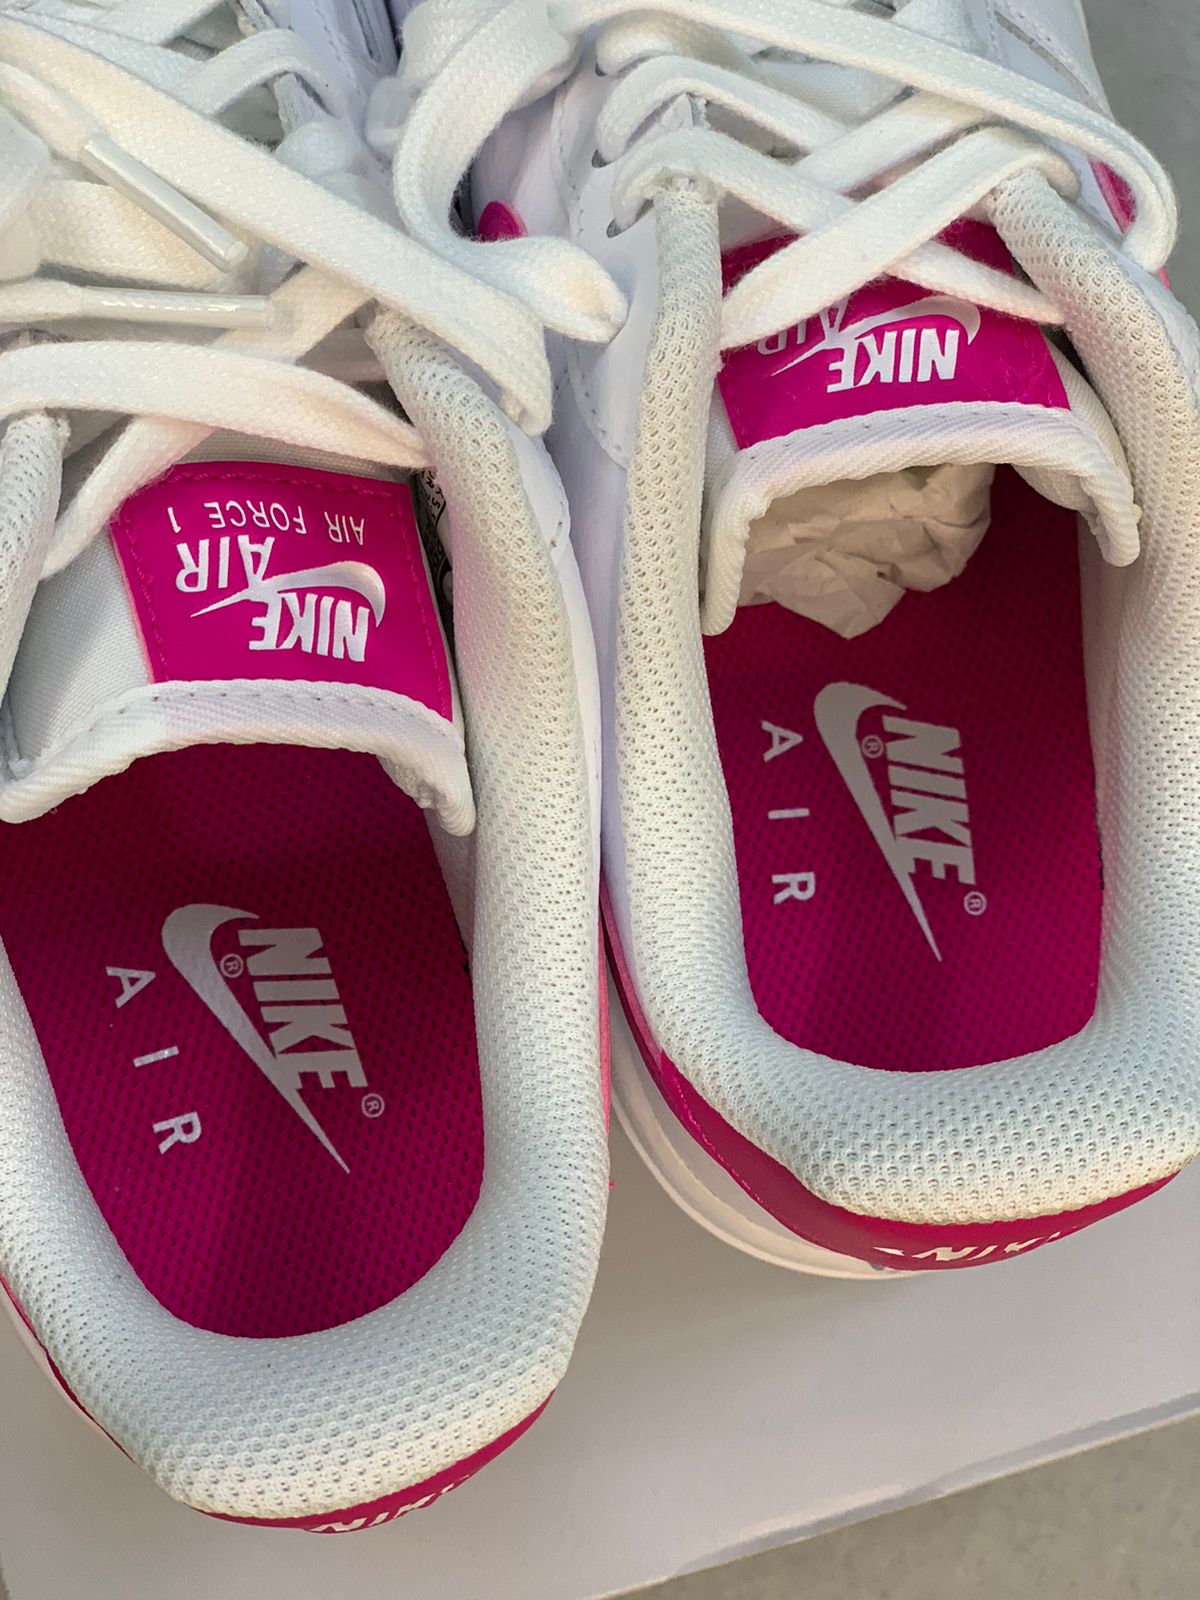 Nike Air Force 1 Pink Prime - sneakerzonik